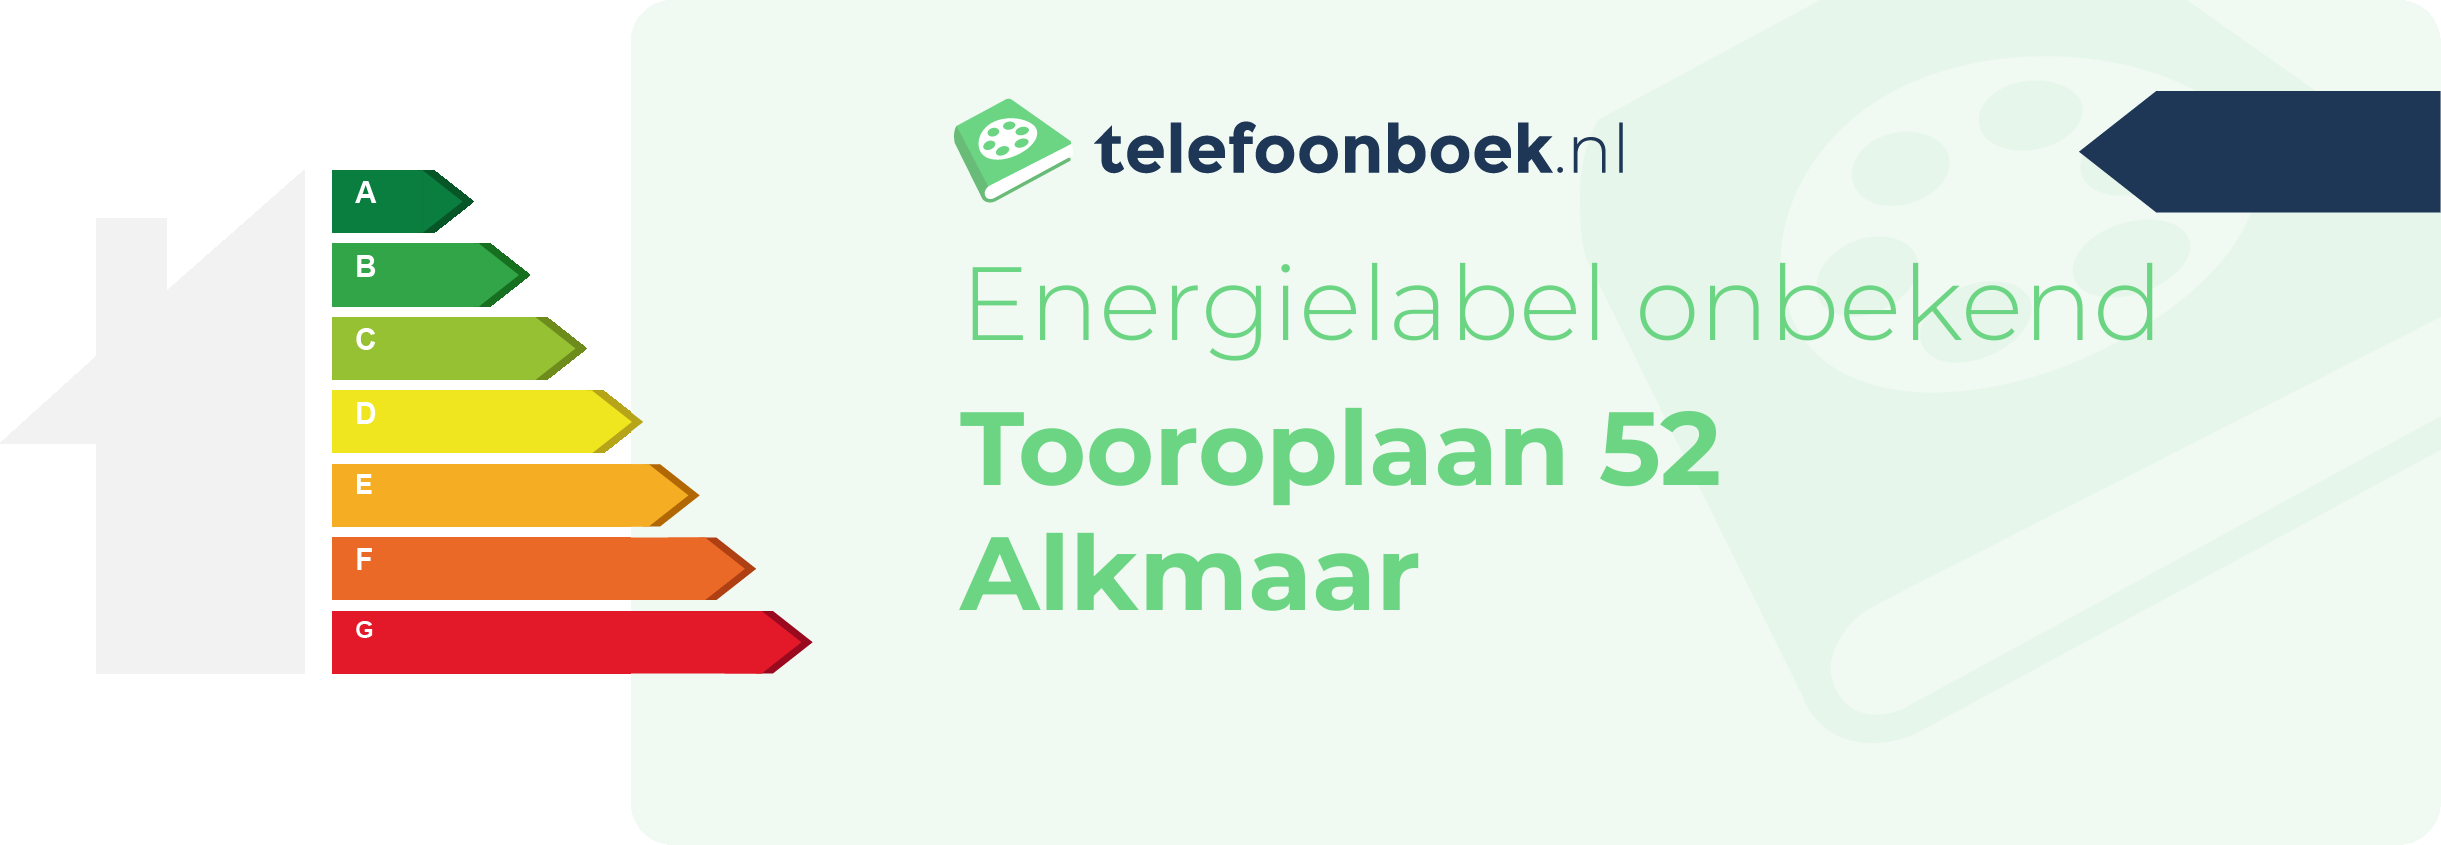 Energielabel Tooroplaan 52 Alkmaar